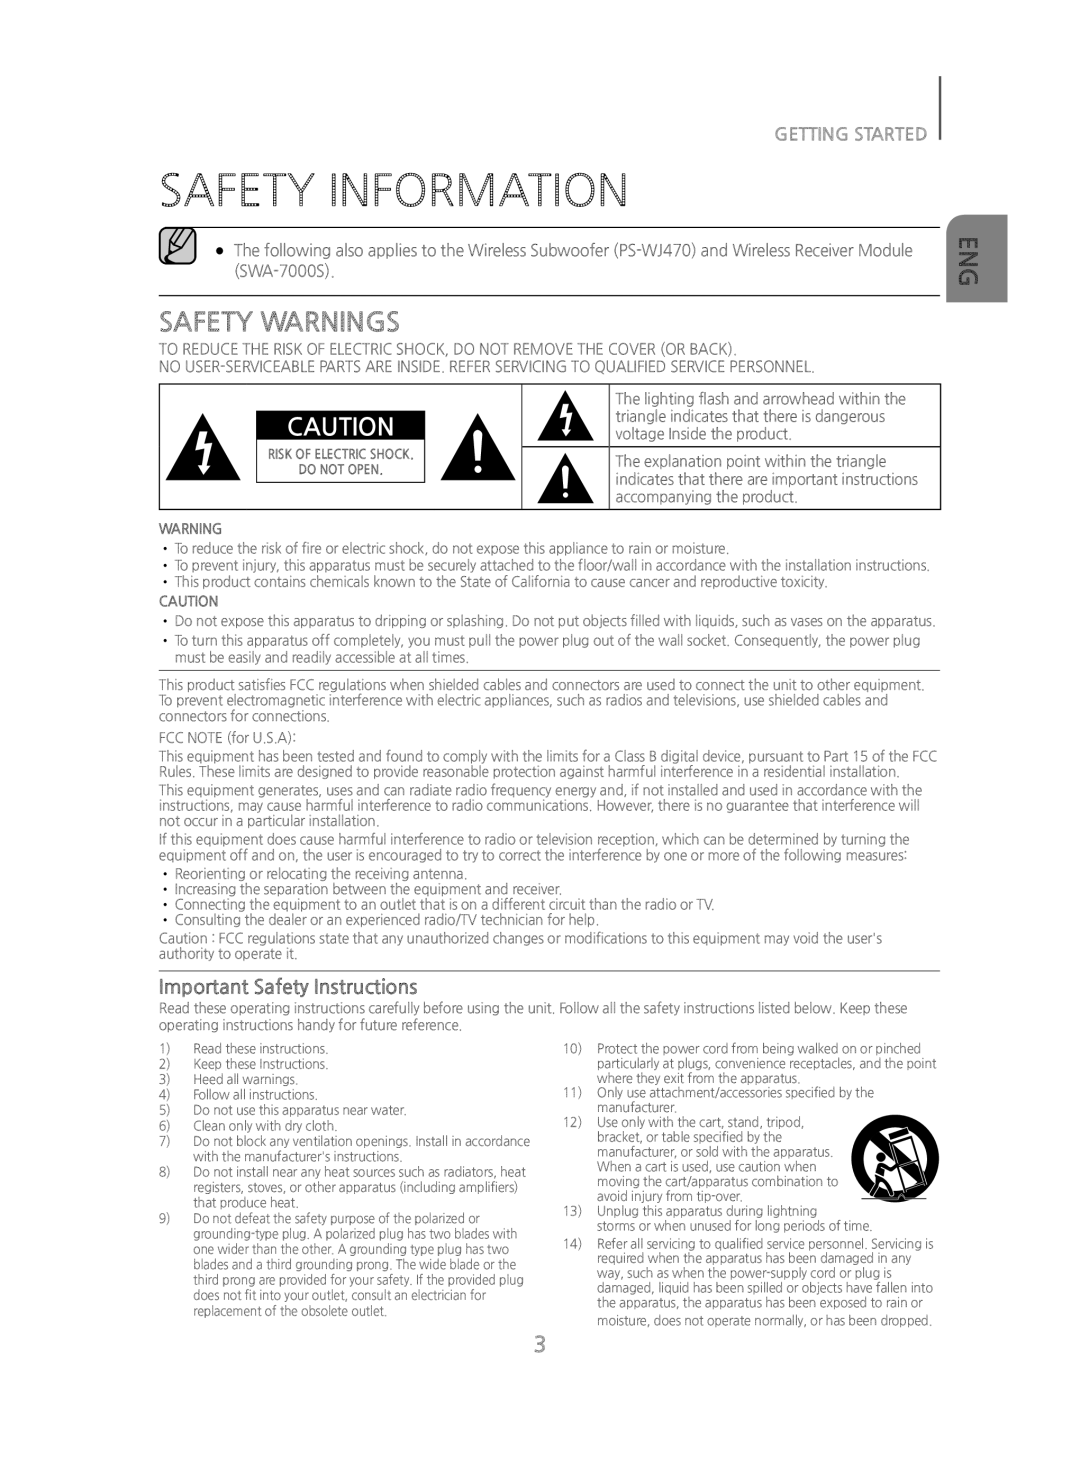 SAFETY INFORMATION Standard HW-J470